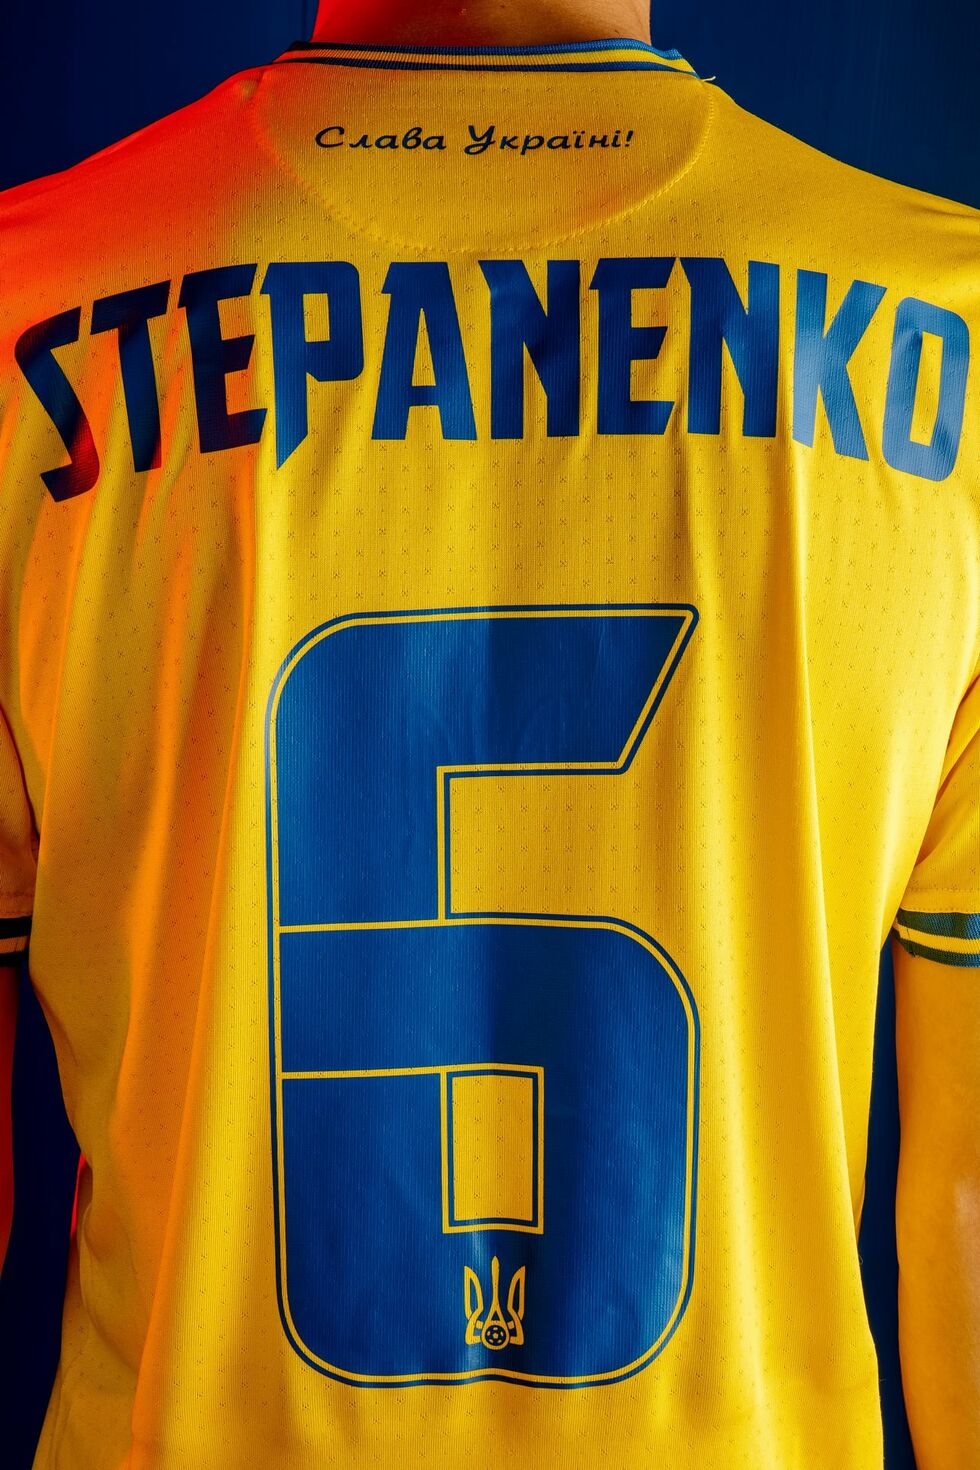 На Евро 2020 украинцы будут играть в футболках с картой Украины. Фоторепортаж 9